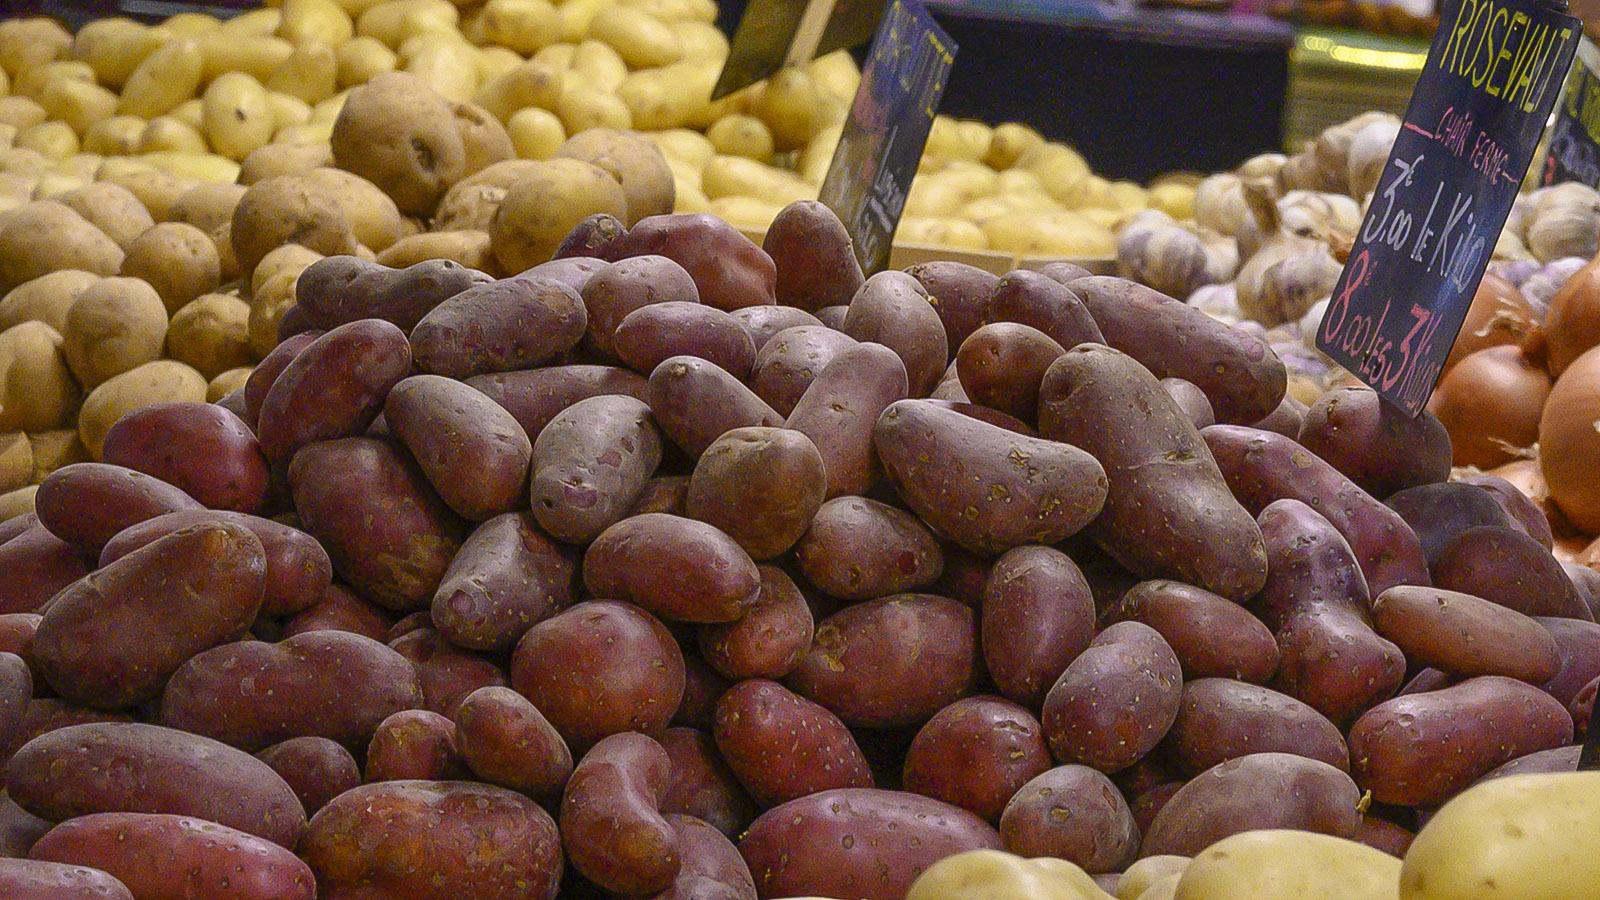 Beliebt: die blaurote Roseval-Kartoffel. Foto: Hilke Maunder